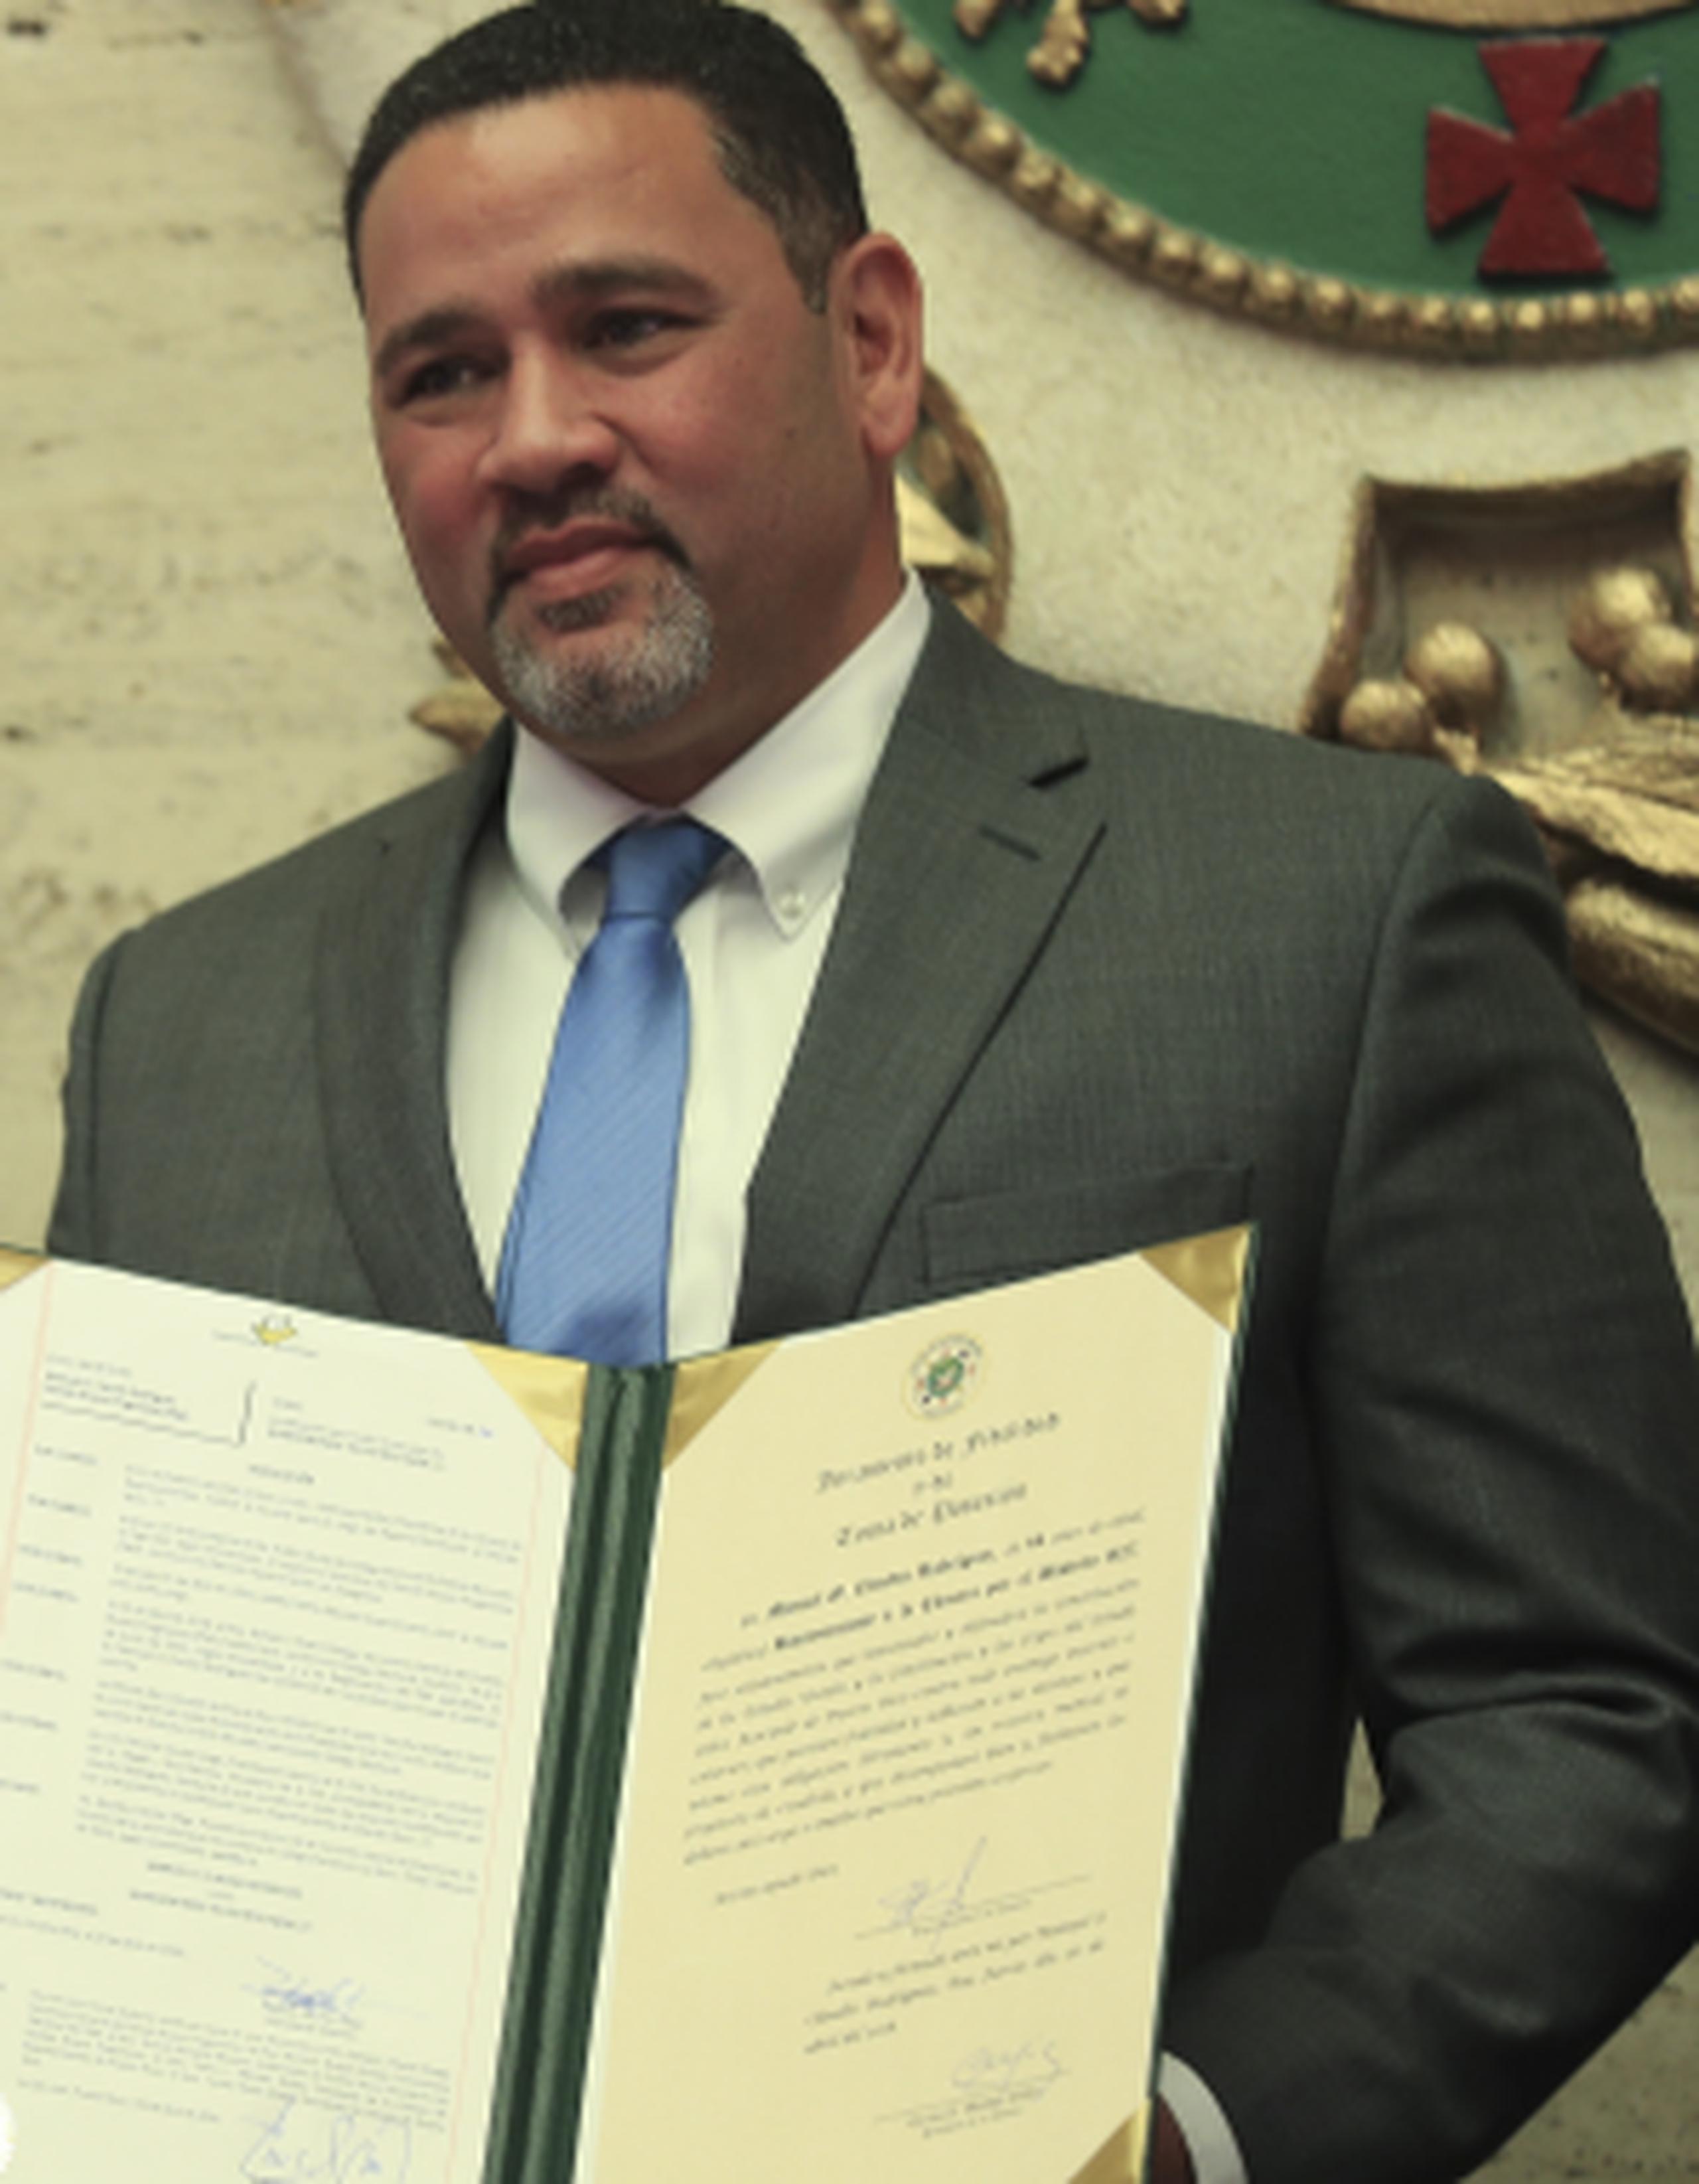 El Colegio de Ingenieros y Agrimensores de Puerto Rico advirtió al legislador Manuel Claudio Rodríguez que está impedido legalmente de exponerse como ingeniero, o inspeccionar obras de construcción. (Archivo)